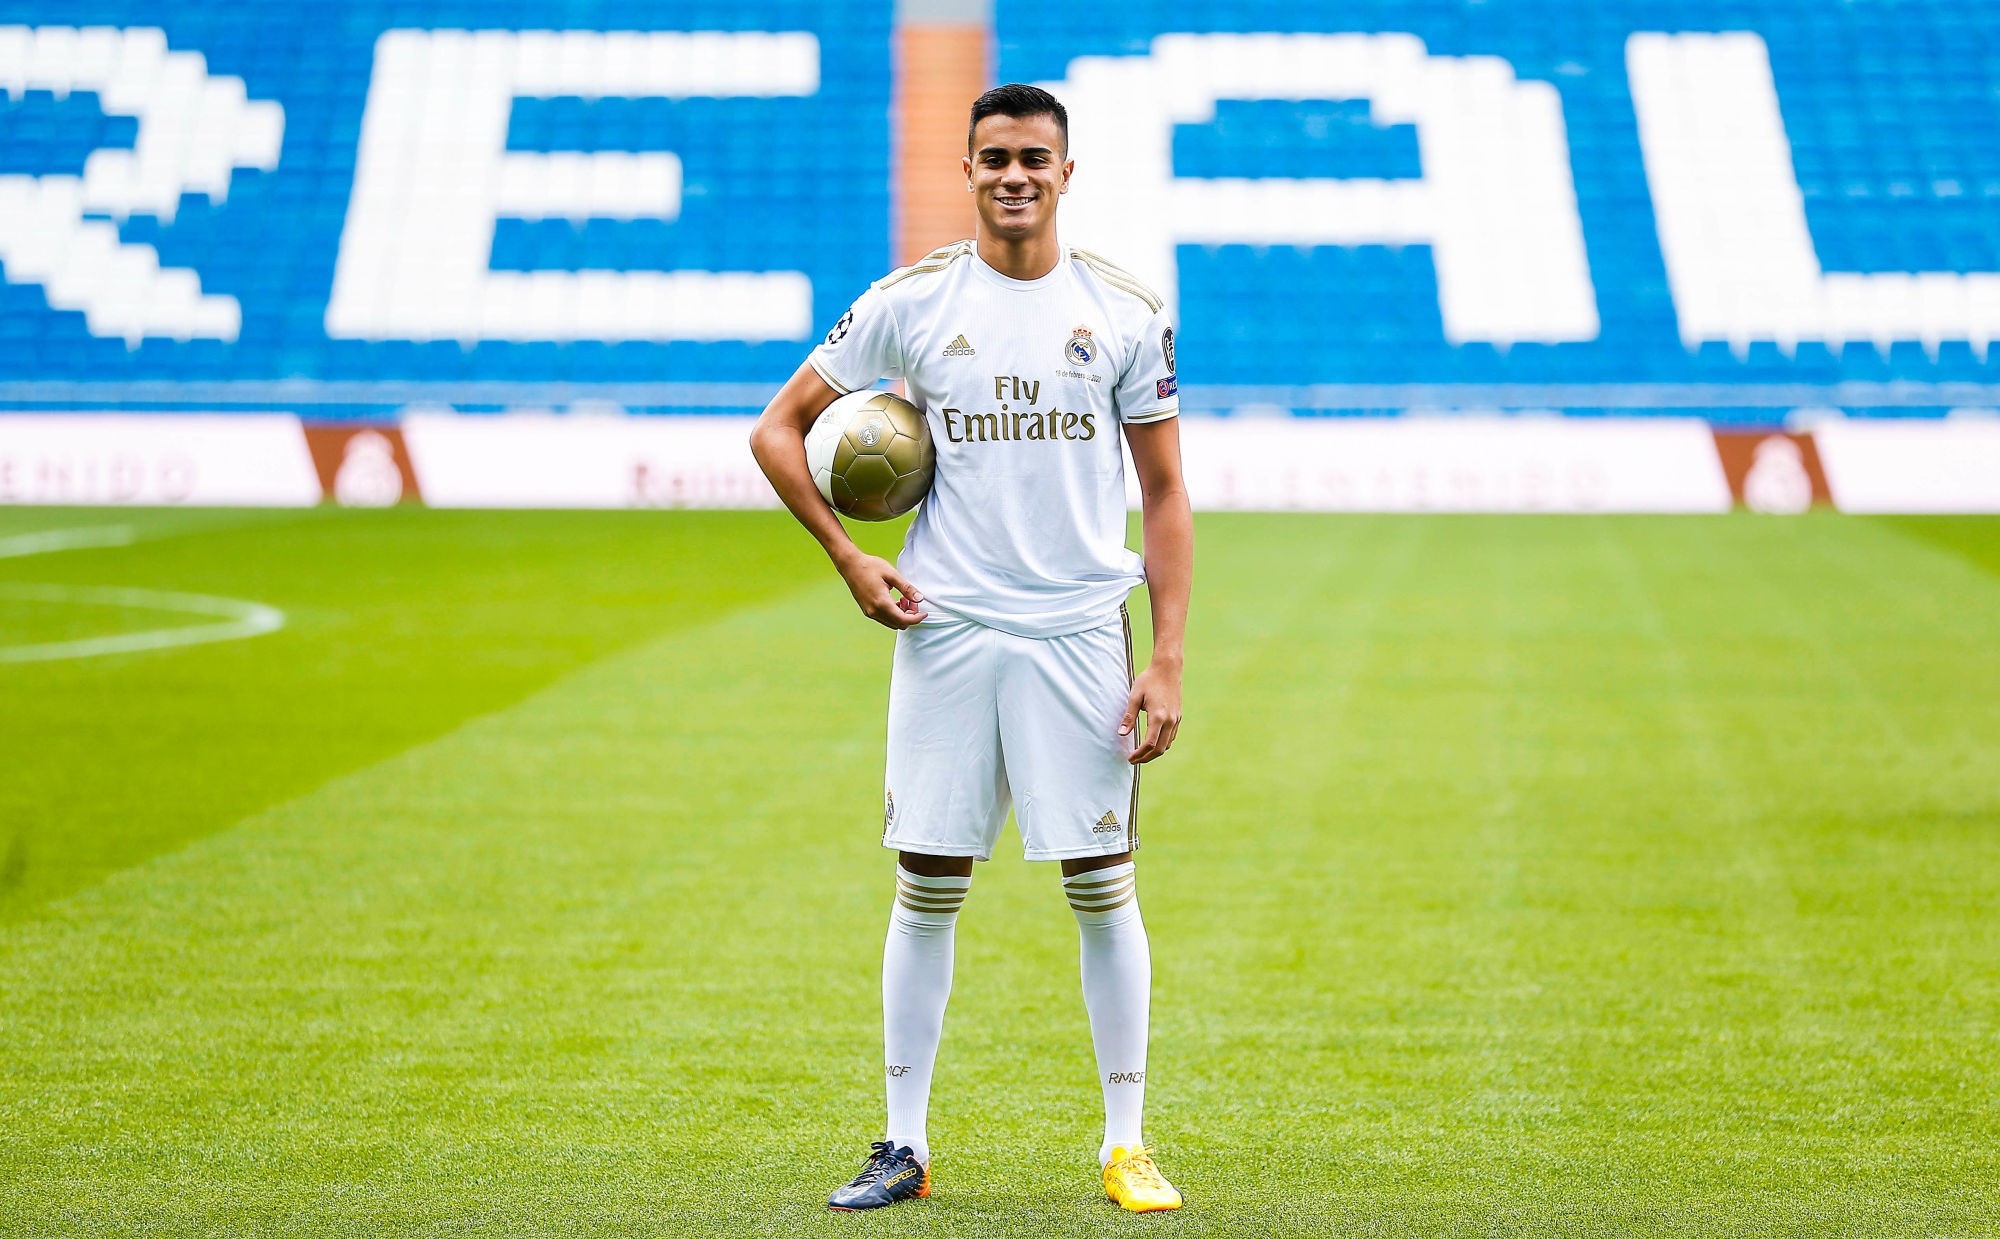 Presentación de Reinier como nuevo jugador del Real Madrid. Real Madrid presents Reinier as new player. 

Photo by Icon Sport - Reinier JESUS - Madrid (Espagne)